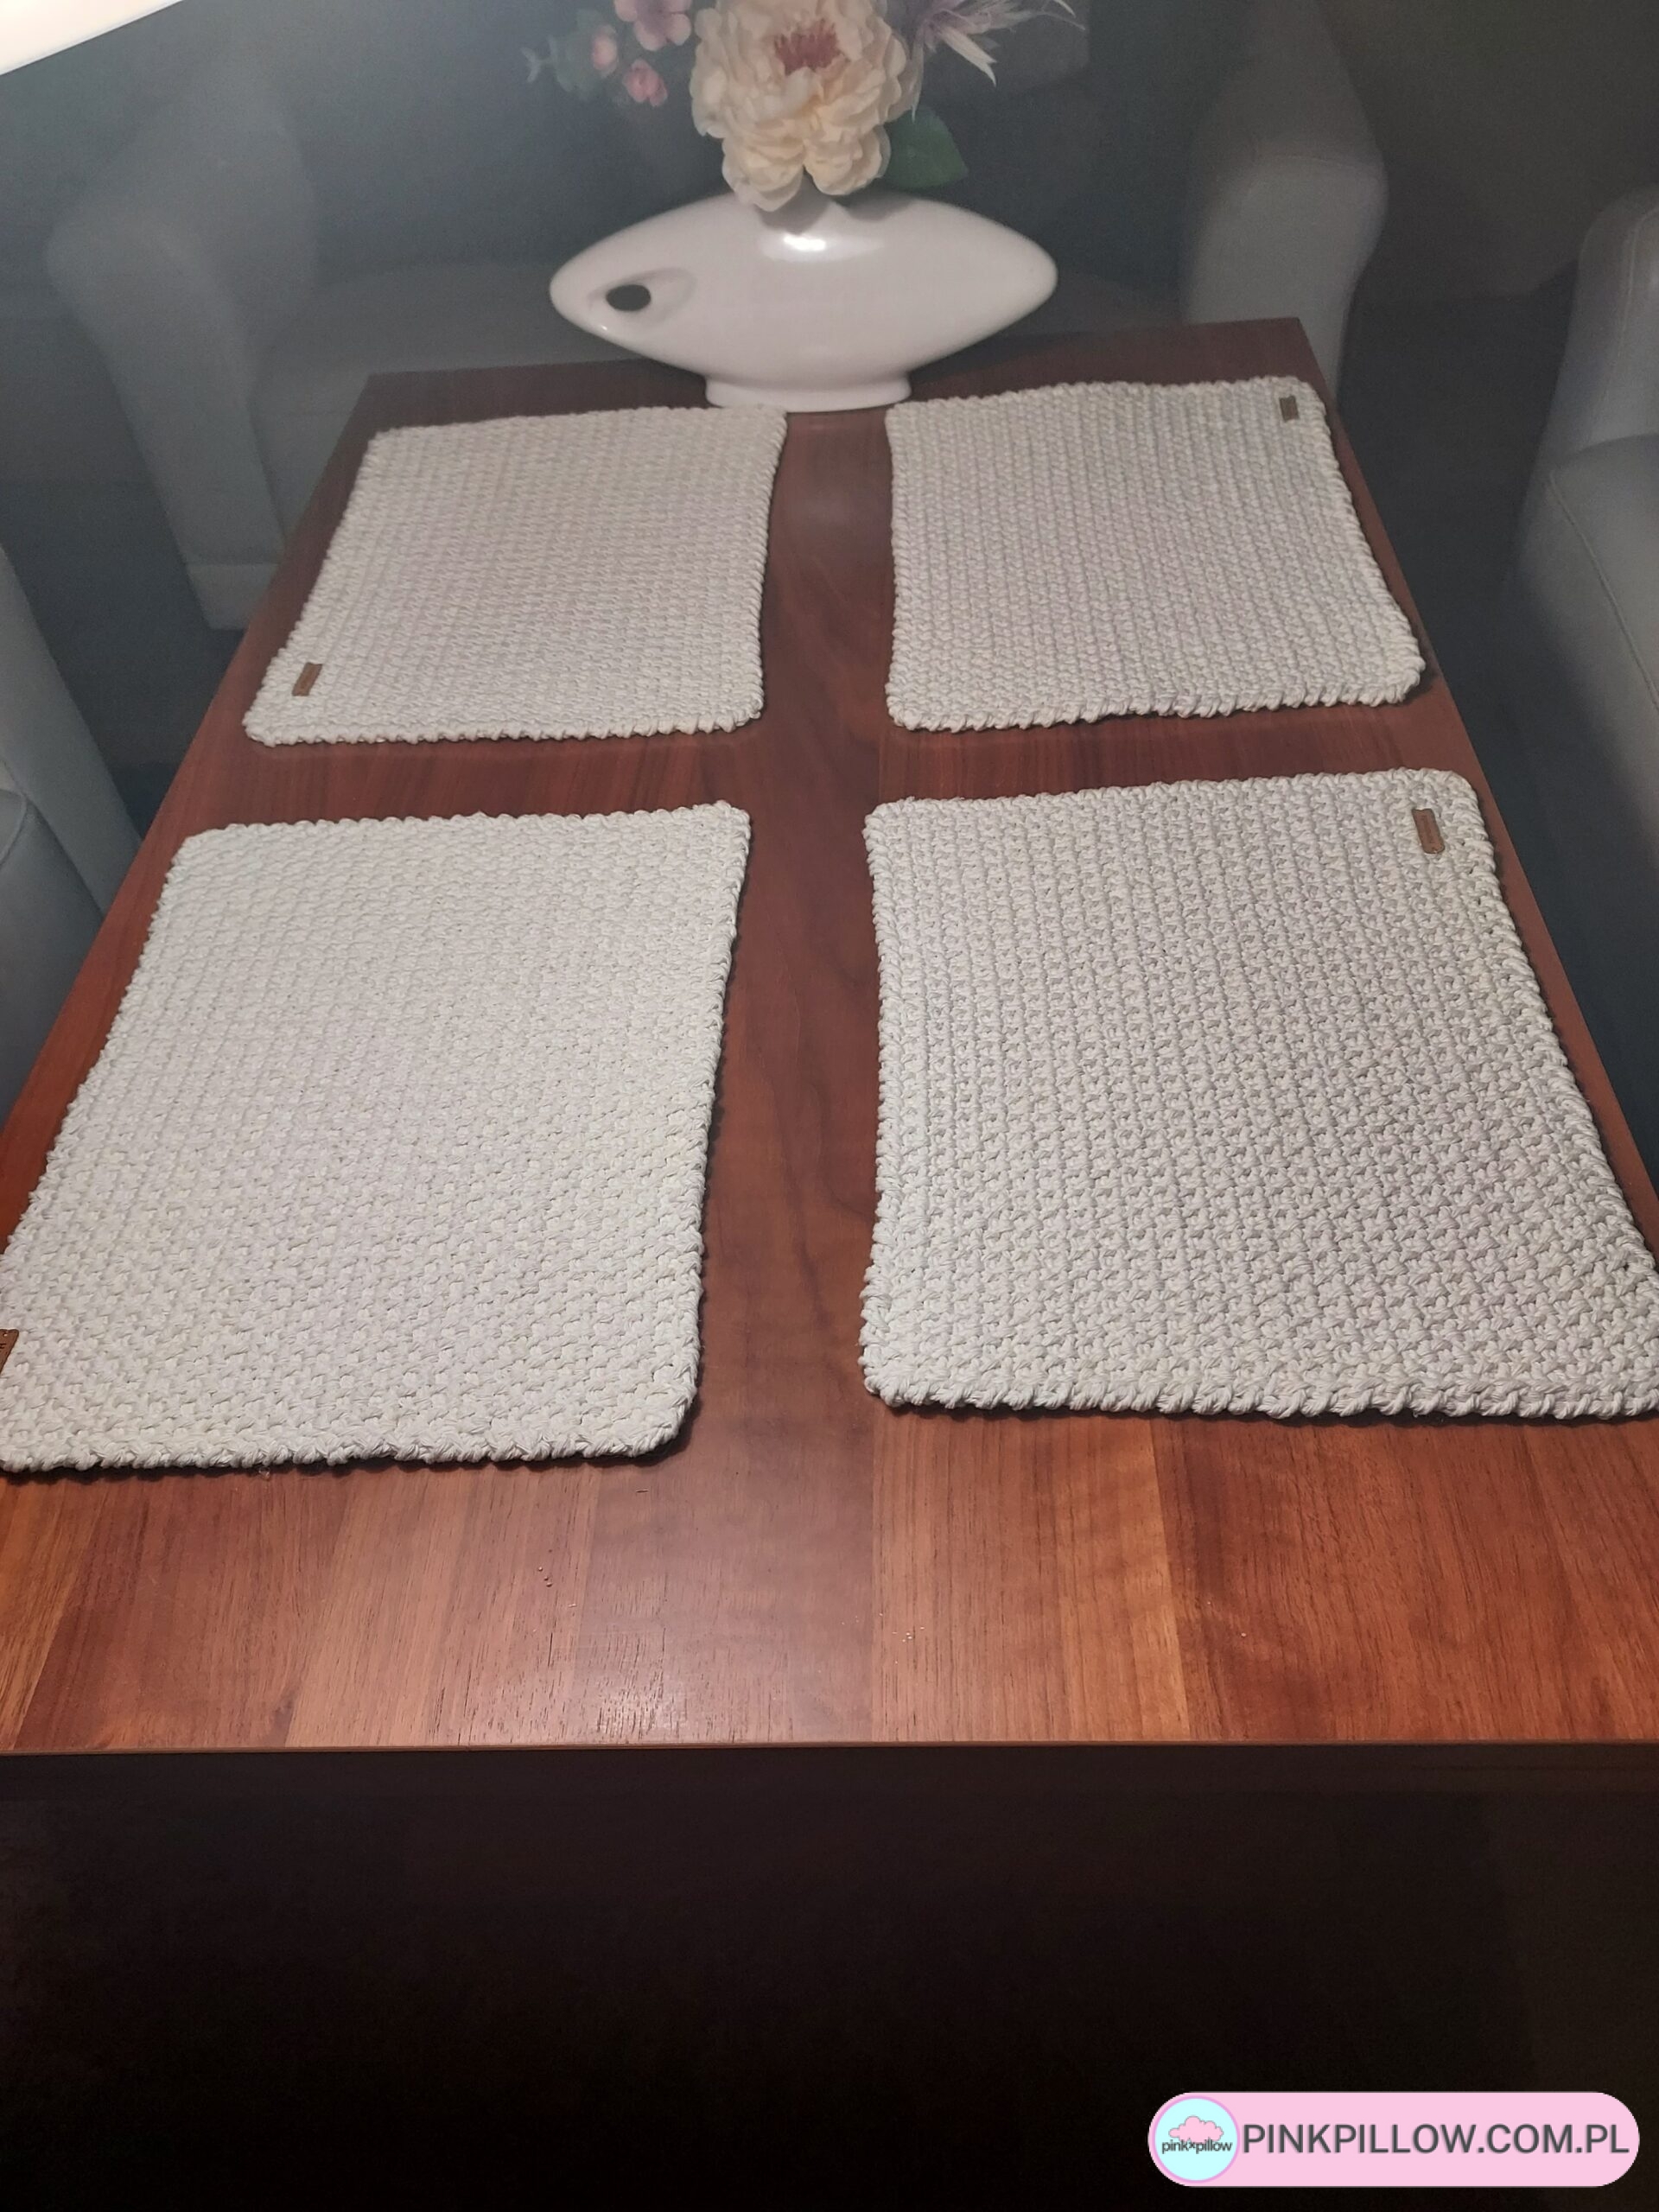 Podkładki na stół prostokątne 4 sztuki - Komplet